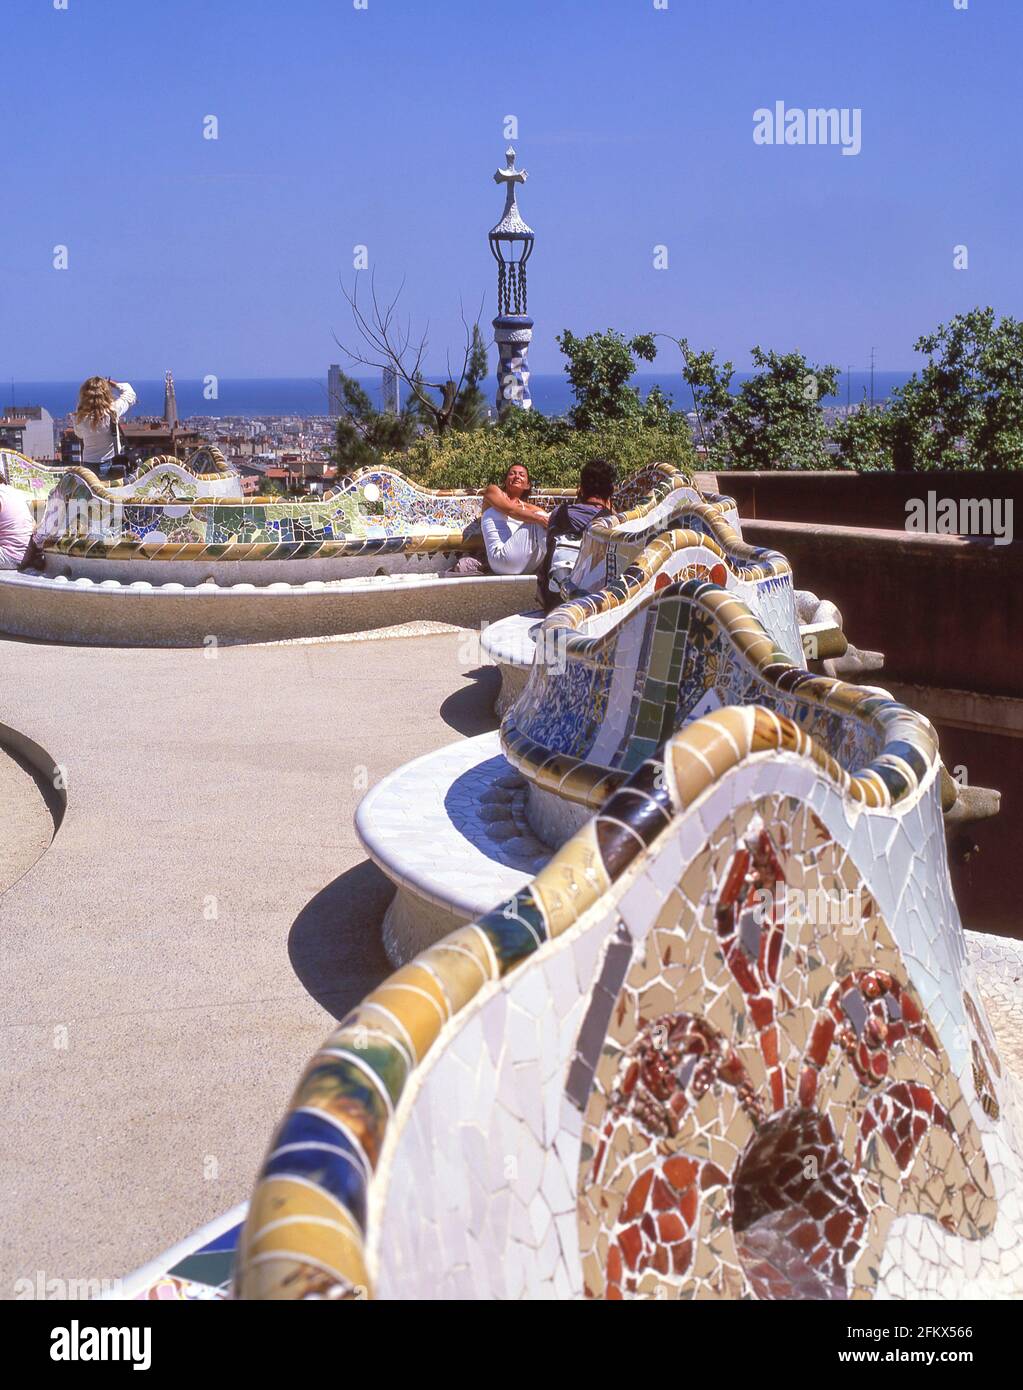 Bancs en serpentin sur la terrasse principale, Parc Guell, quartier de Gràcia, Barcelone, province de Barcelone, Catalogne, Espagne Banque D'Images